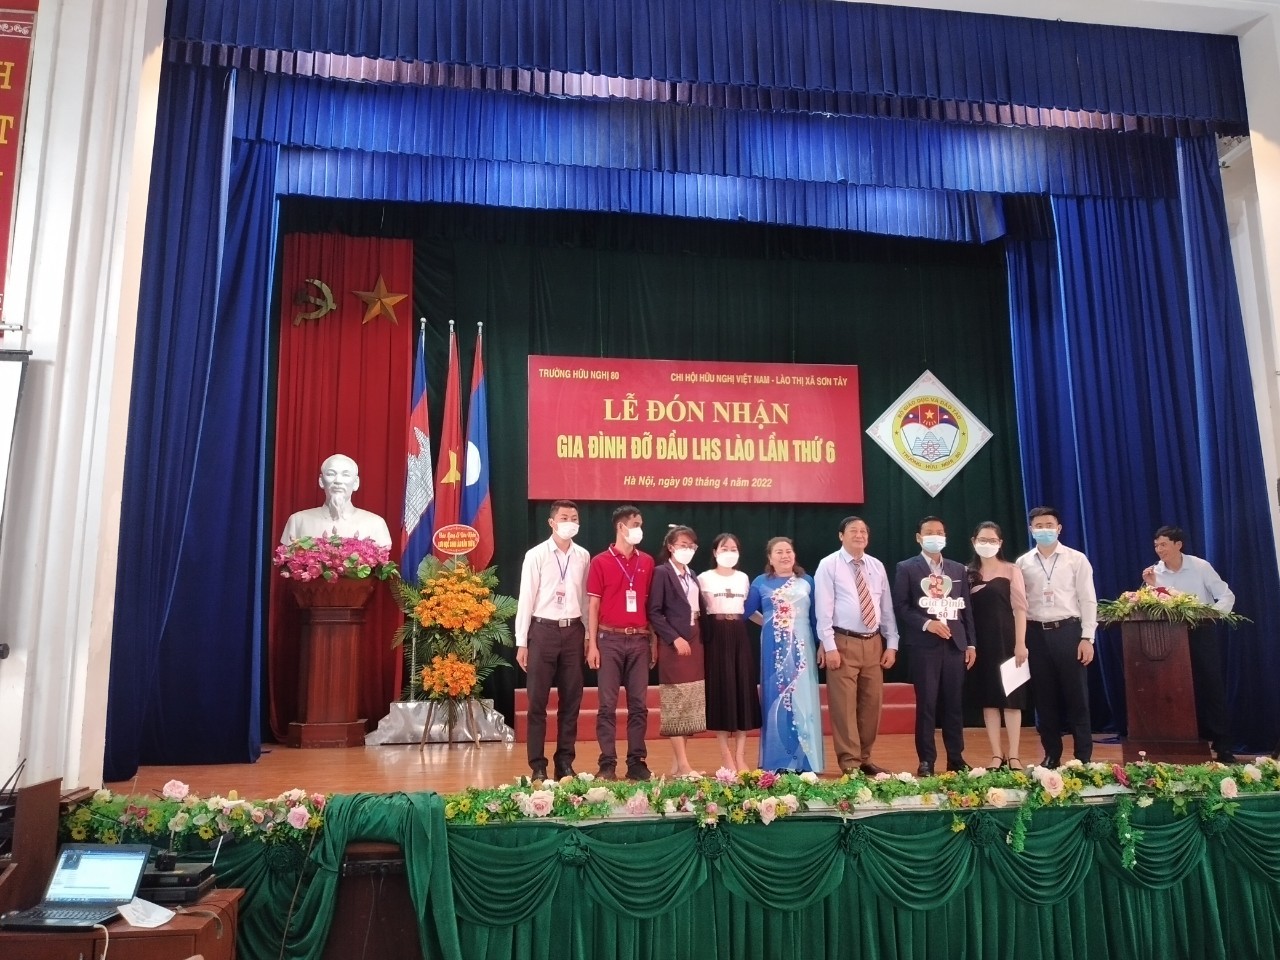 90 lưu học sinh Lào được gia đình người Việt nhận làm con nuôi